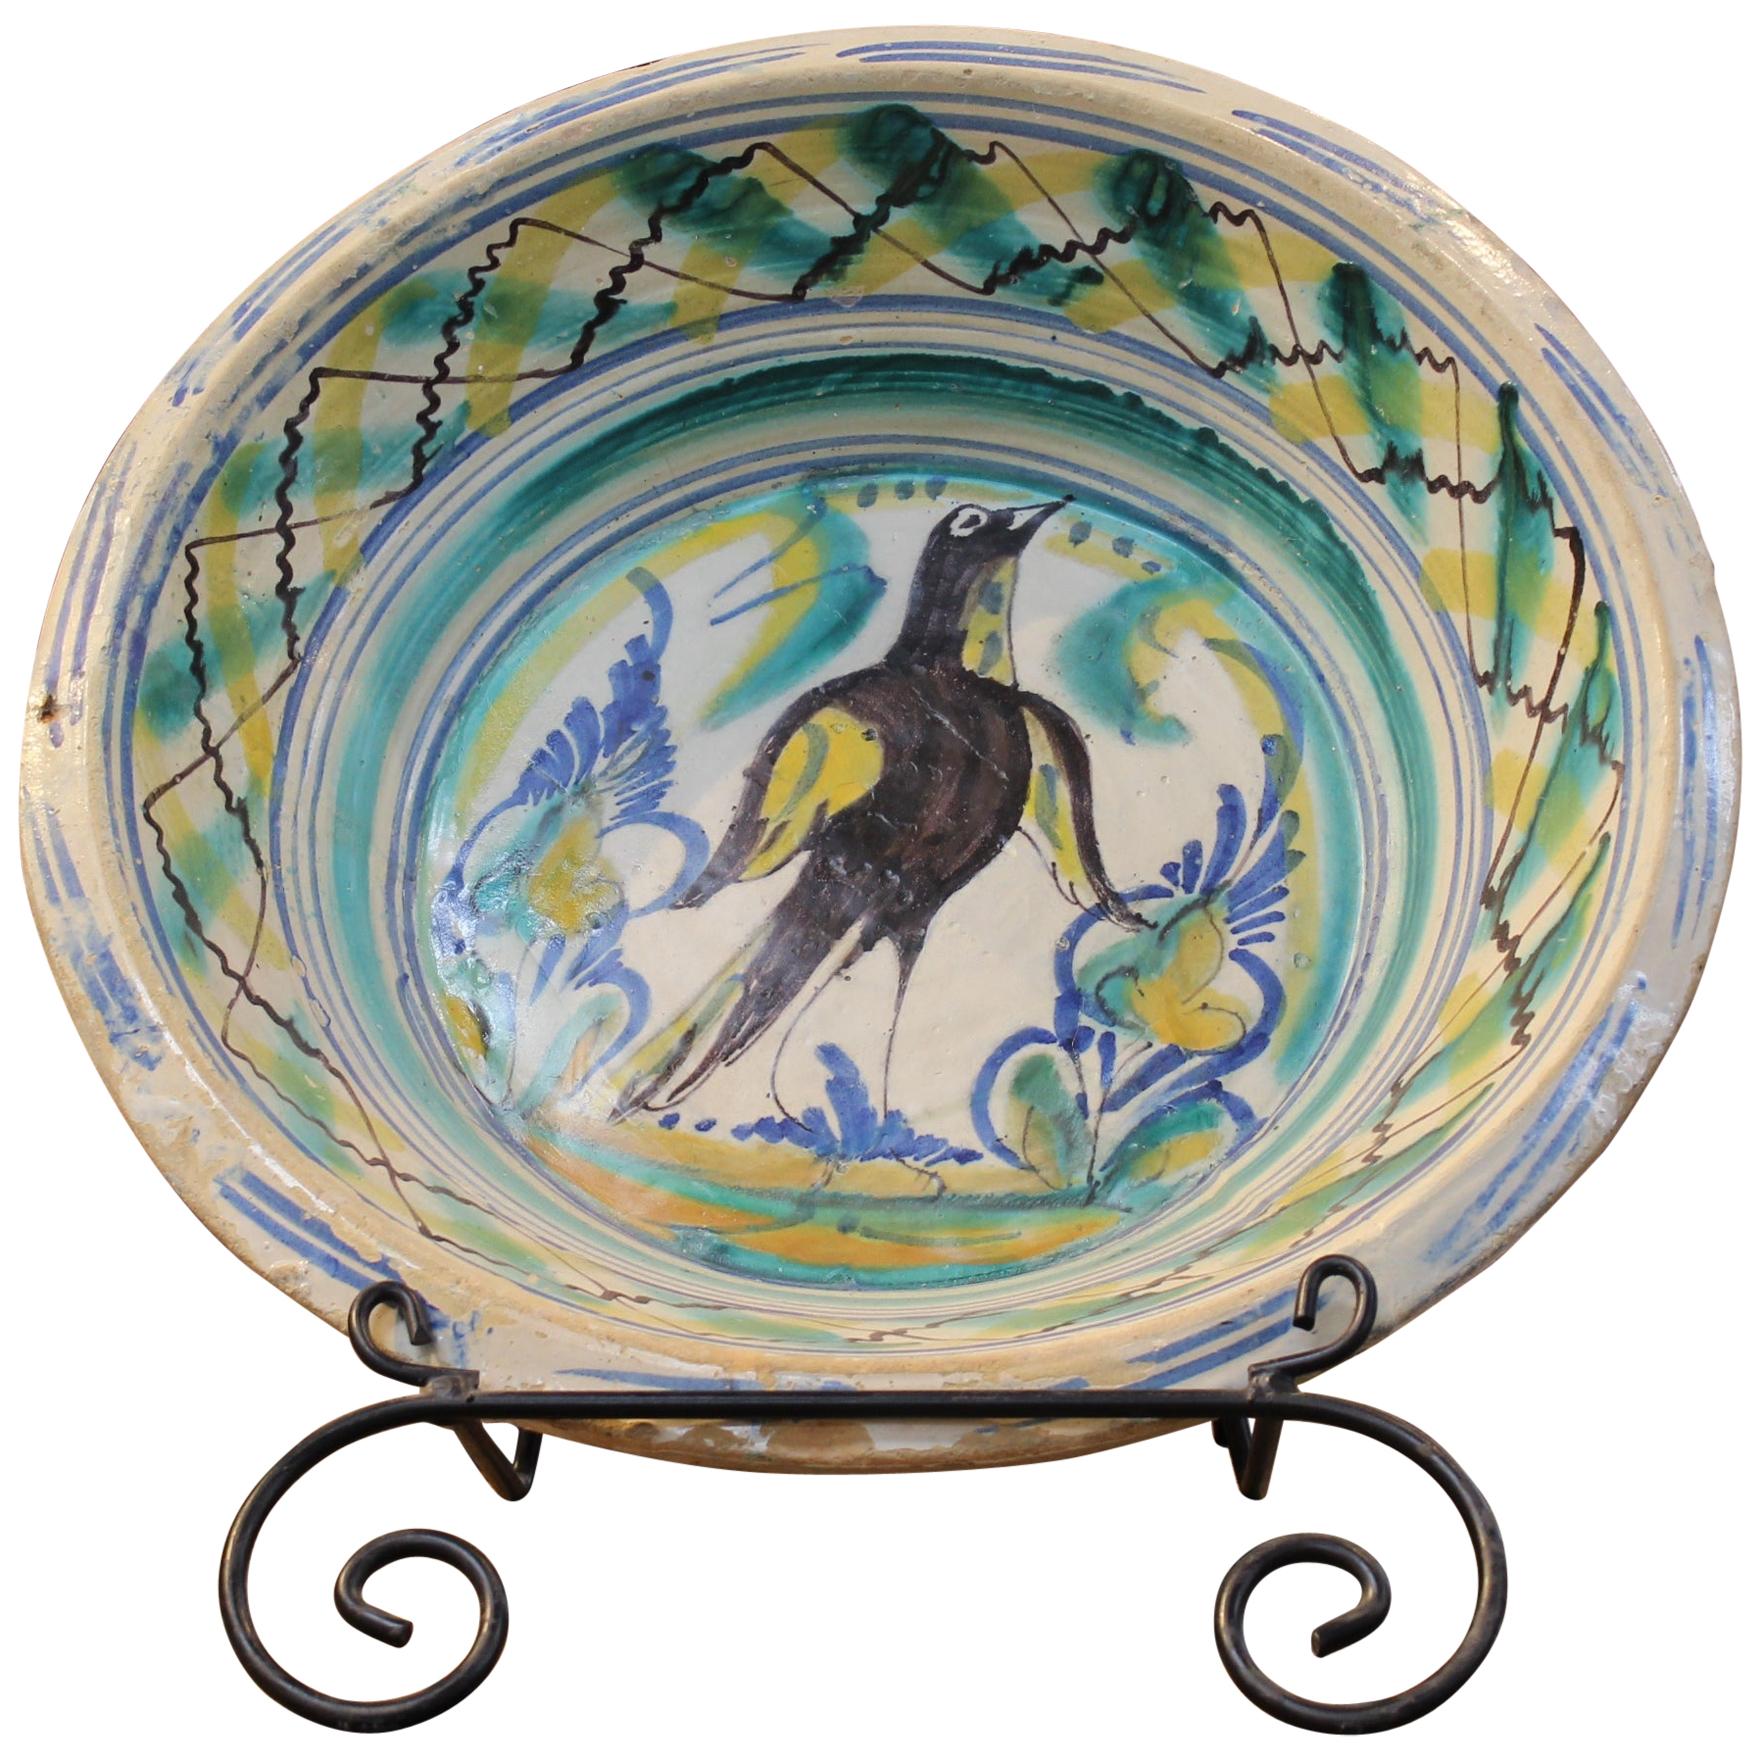 Spanischer Triana-Keramikteller „Lebrillo“ des 19. Jahrhunderts mit bemaltem Vogel